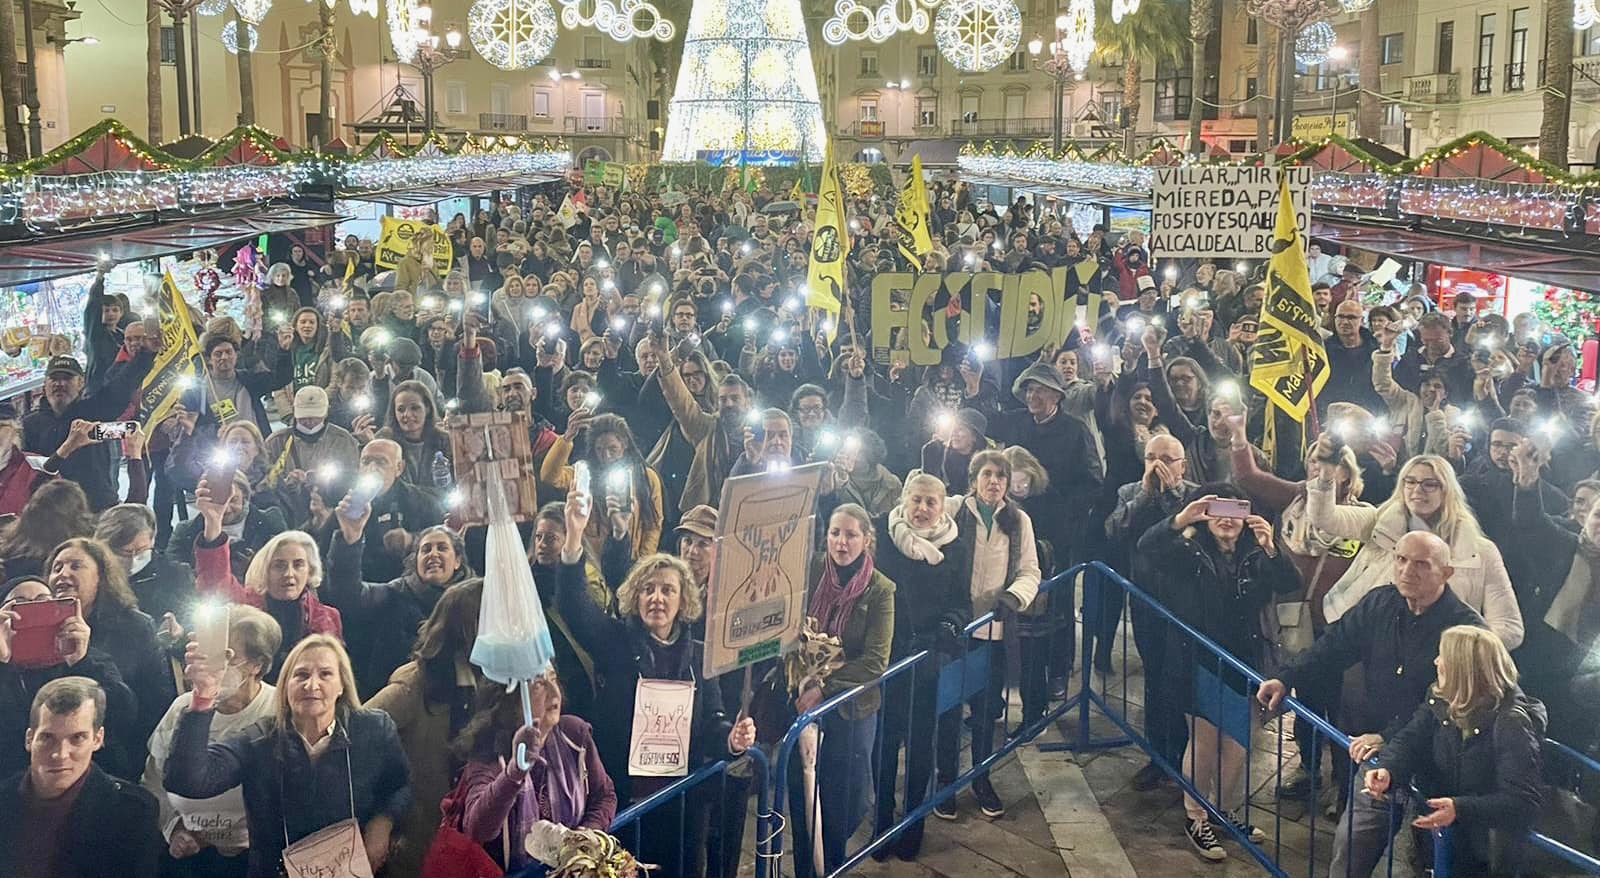 Un instante de la manifestación contra los fosfoyesos celebrada en Huelva.